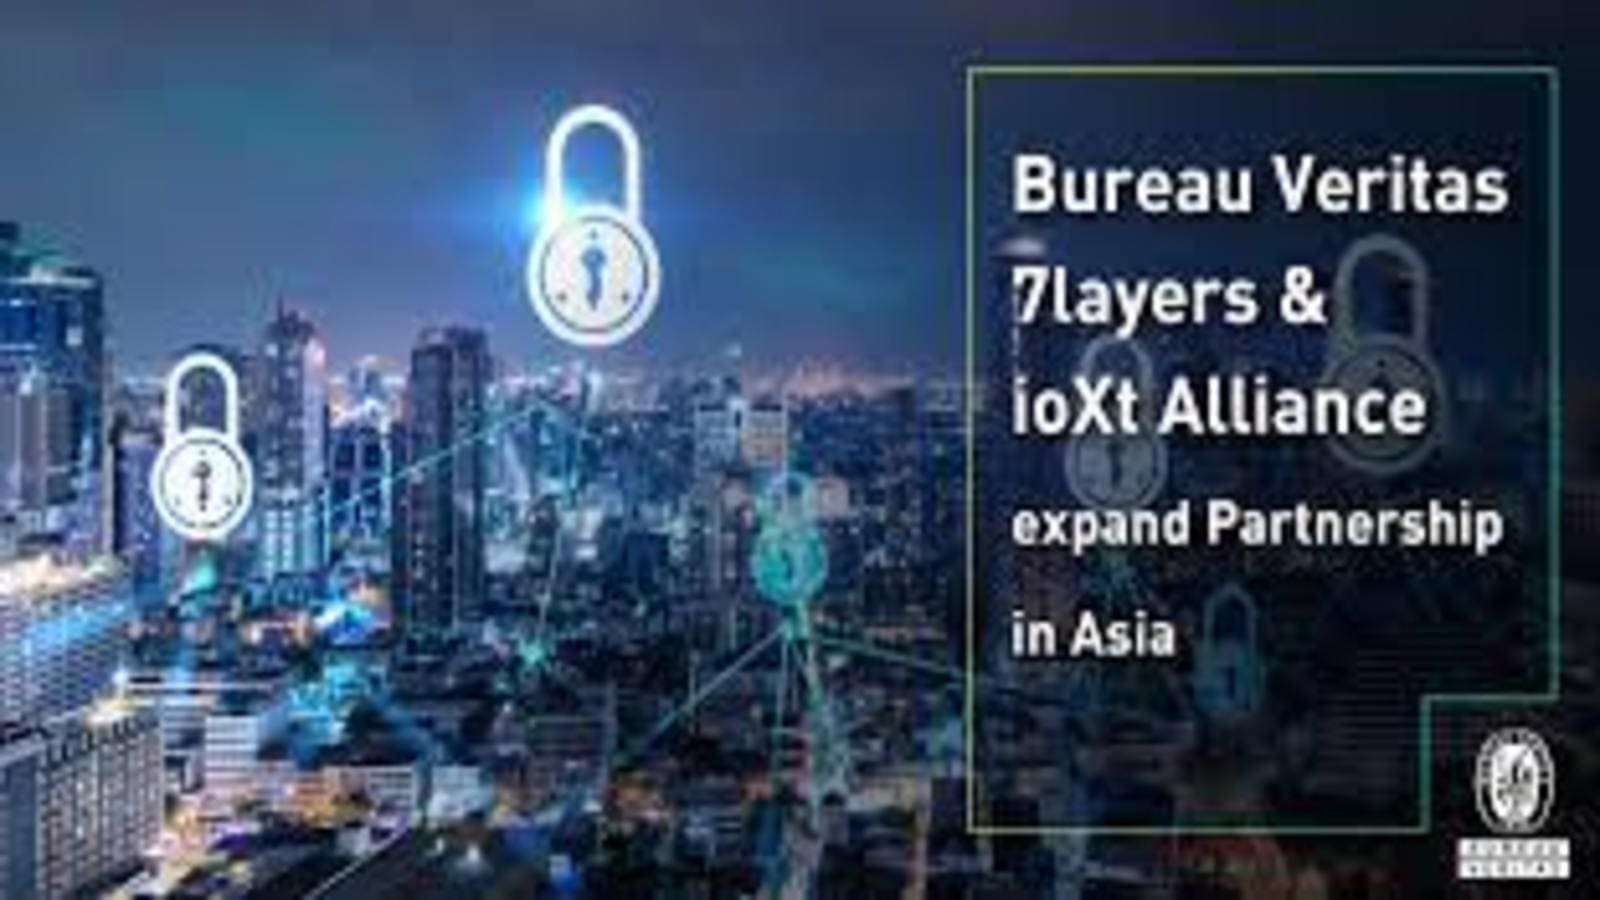 Bureau Veritas 7layers, Ioxt Alliance expand partnership in Asia